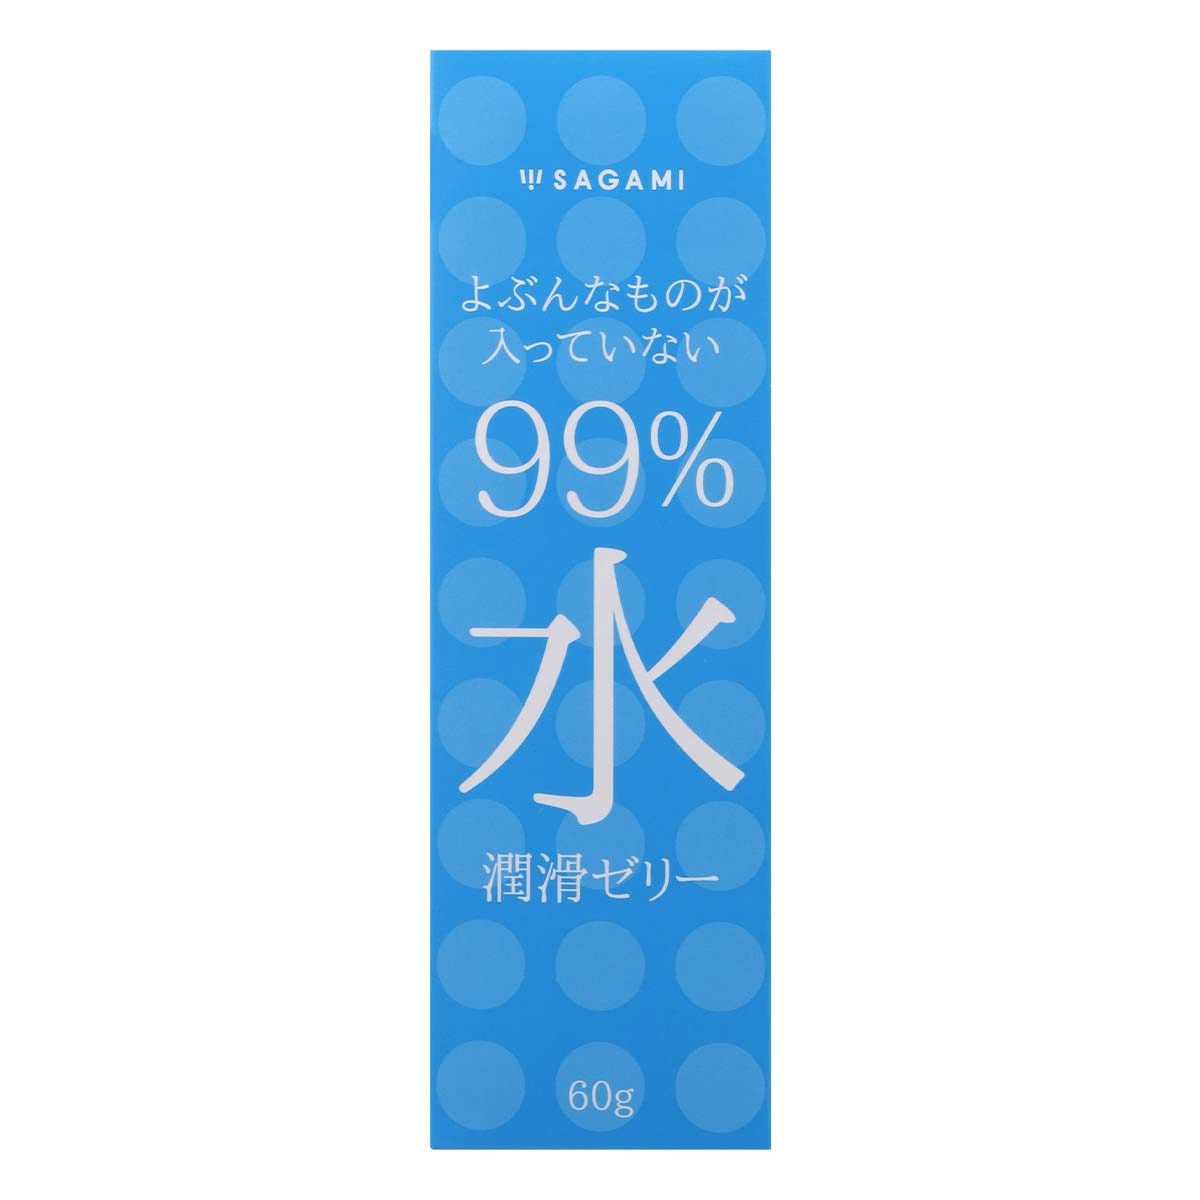 Sagami 相模 99% 水潤滑液 08/2024